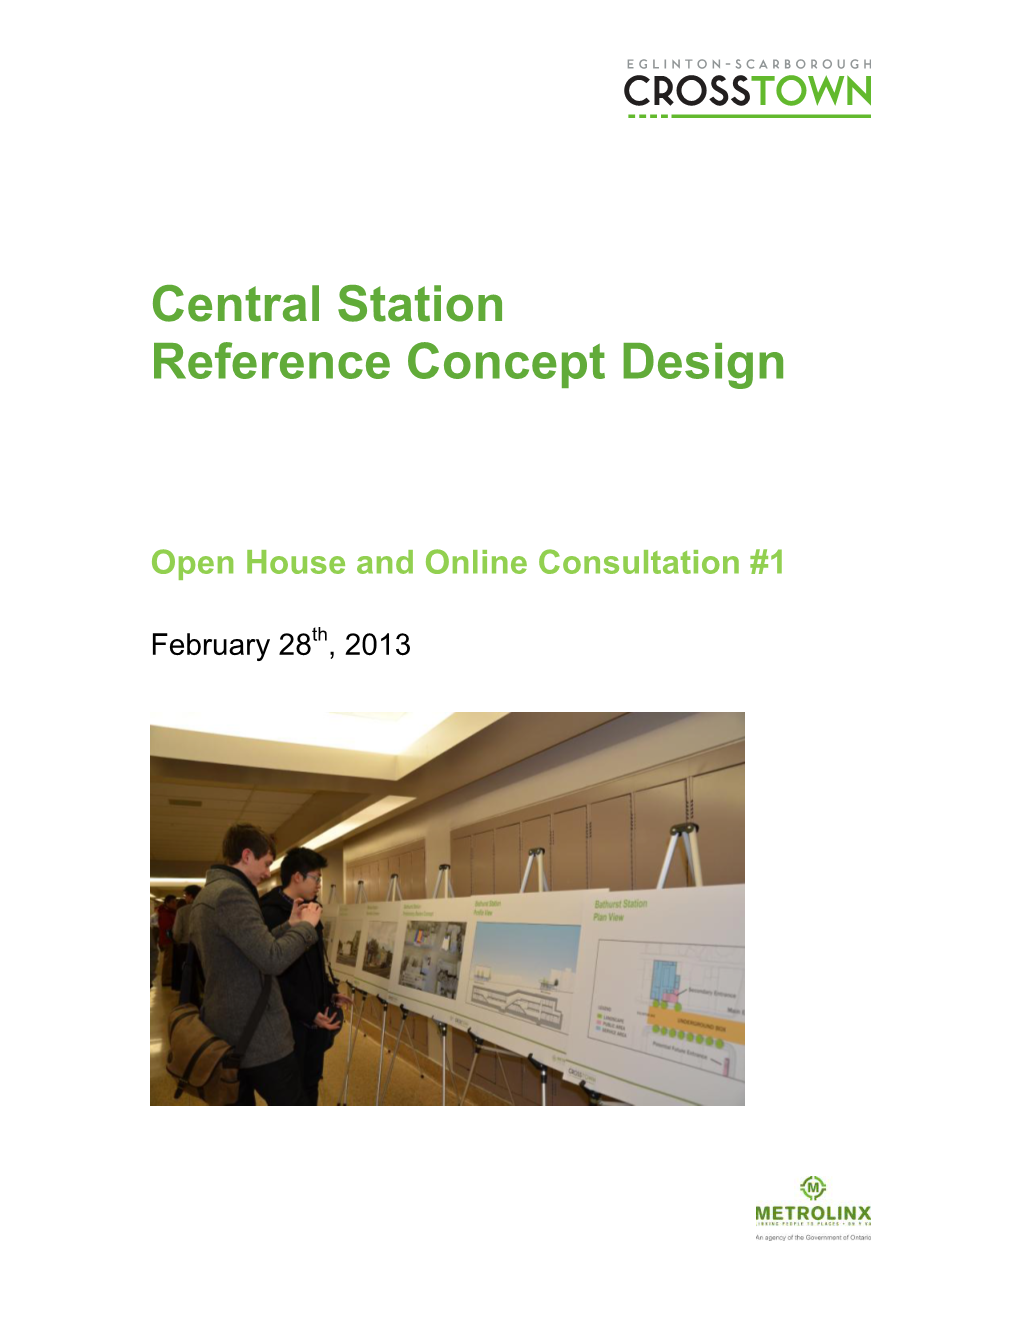 Central Station Reference Concept Design